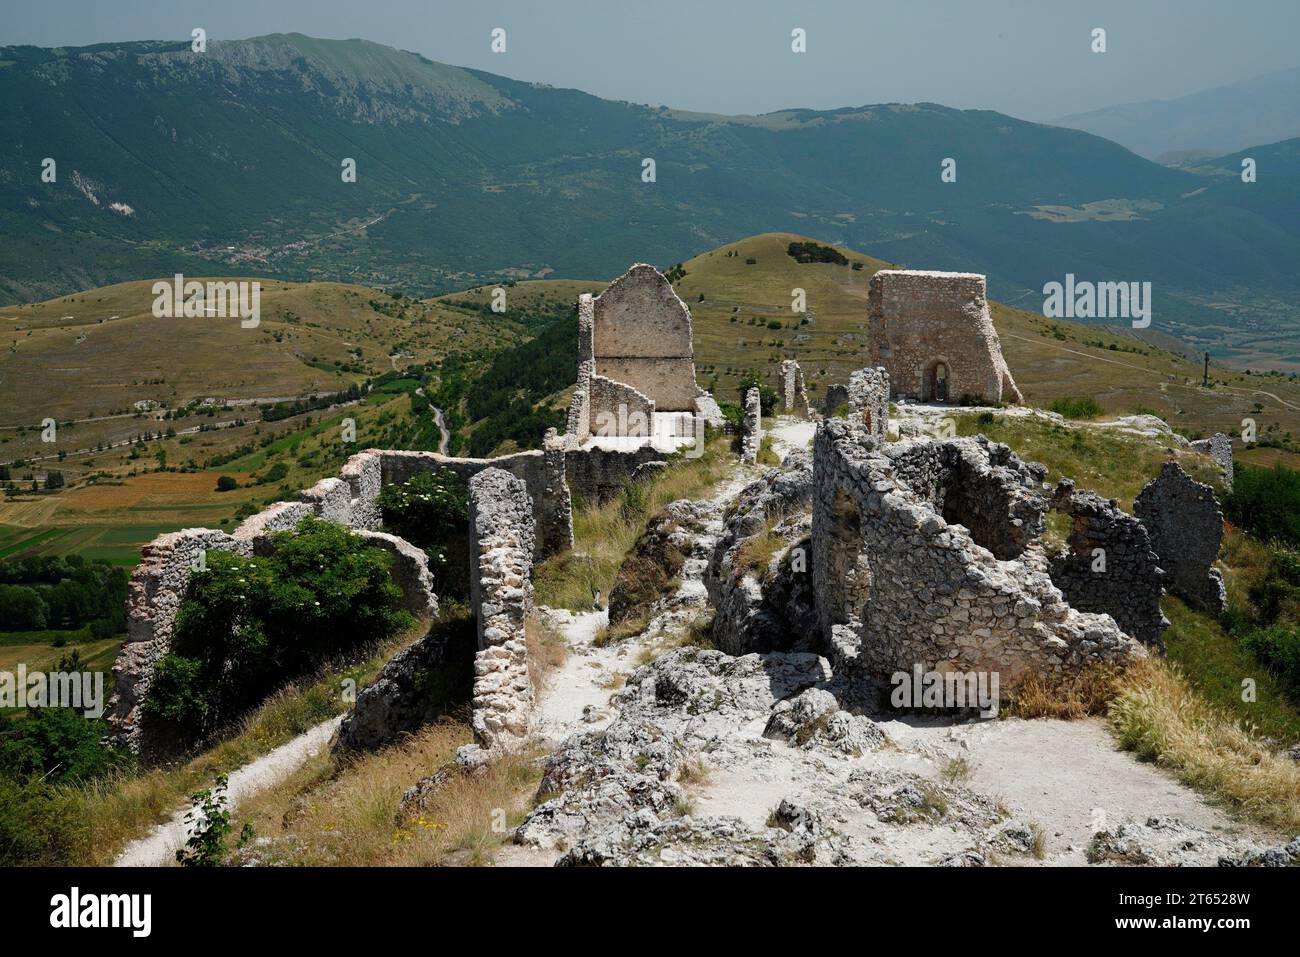 Rocca Calascio, Apennines, Province of L' (Aquila), Abruzzo Region, Italy Stock Photo